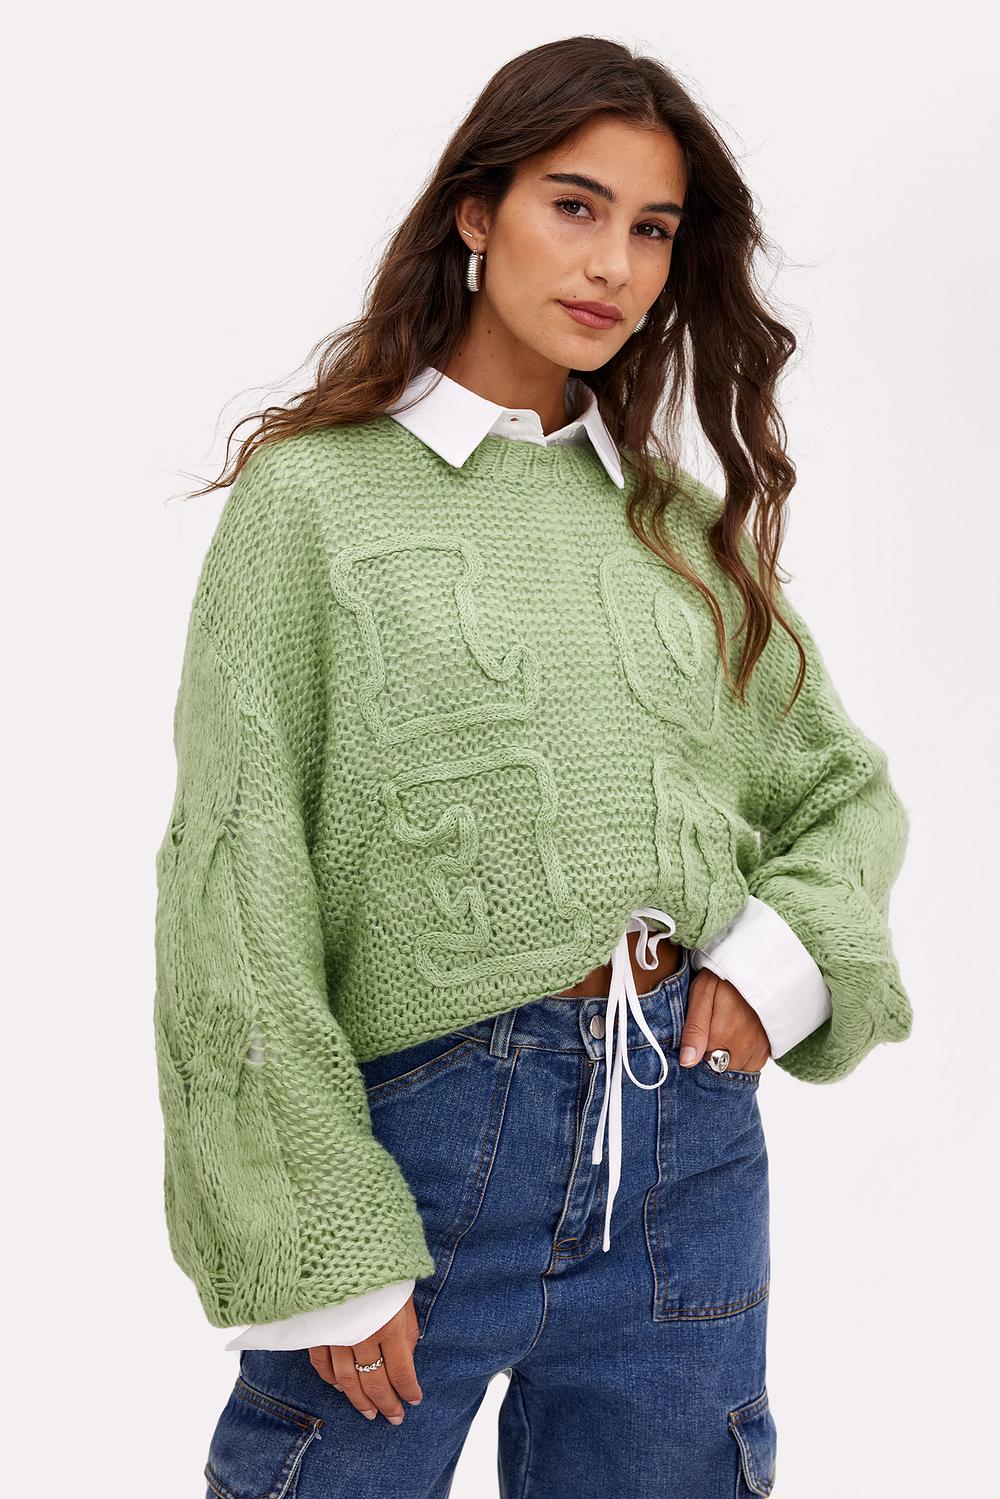 Light green jumper